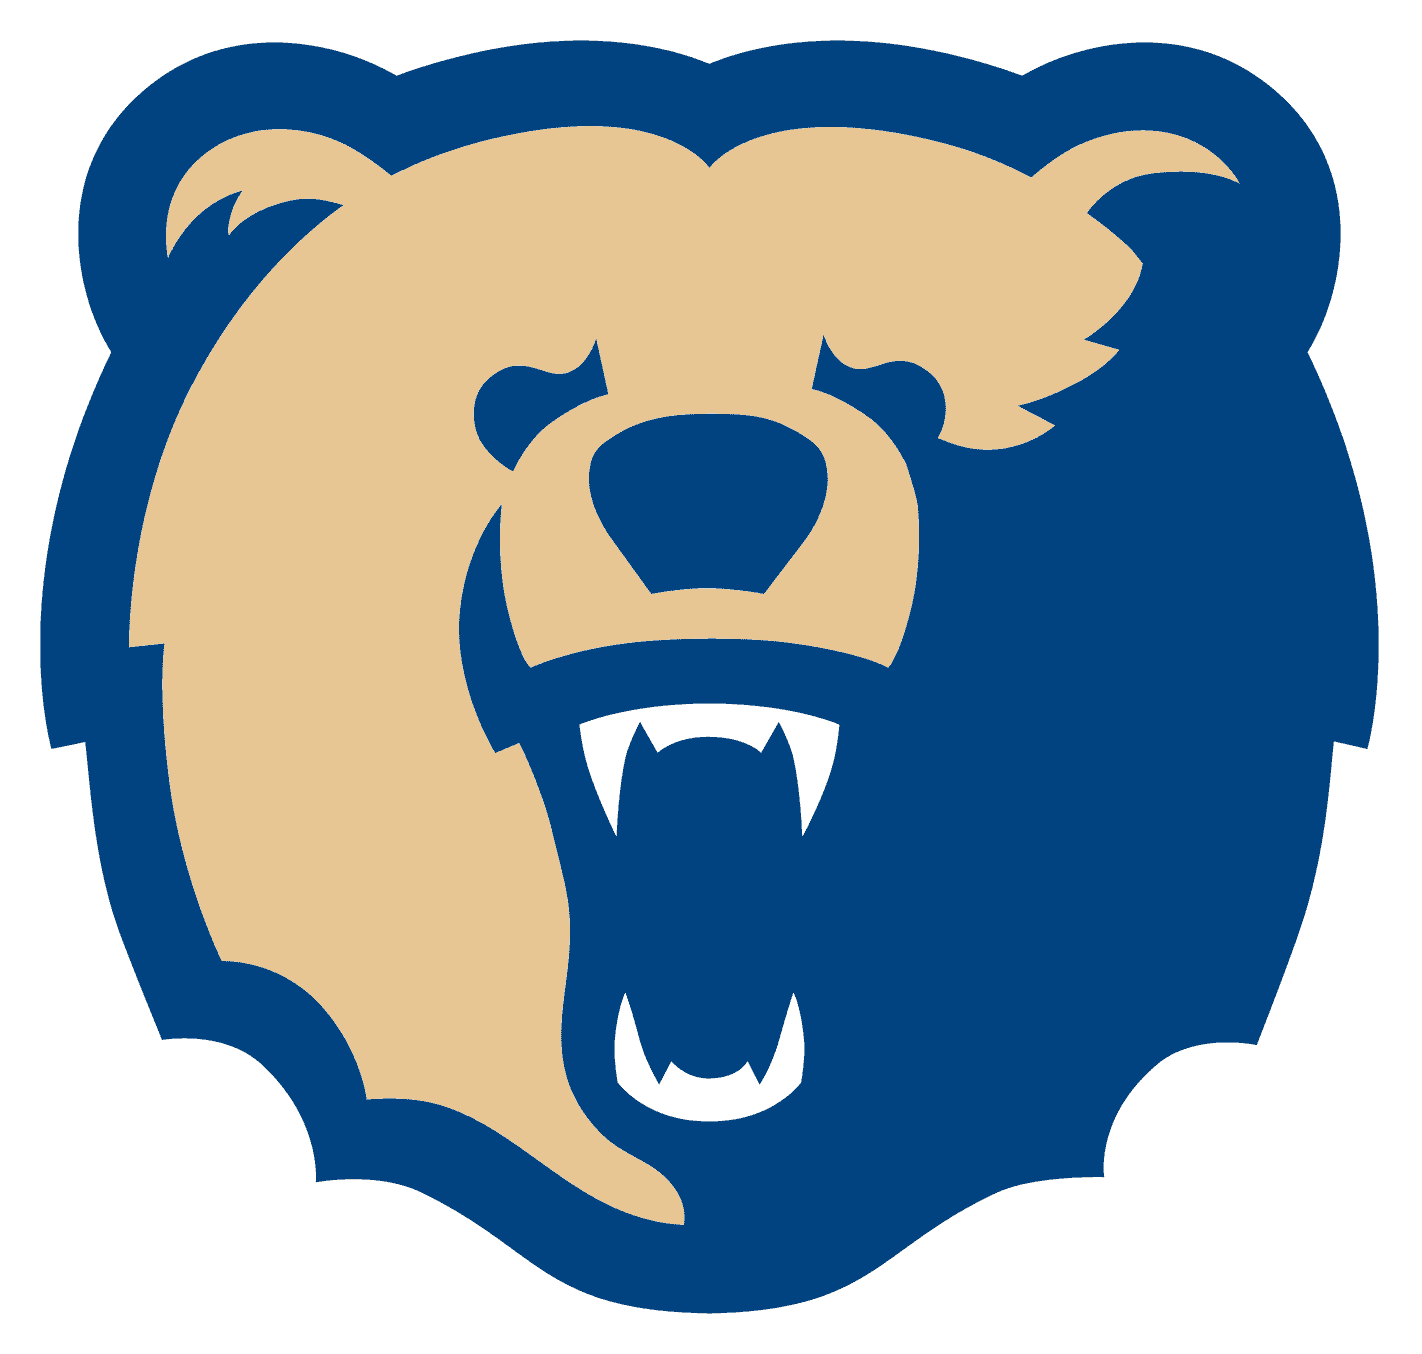 Morgan State Bears Logo png